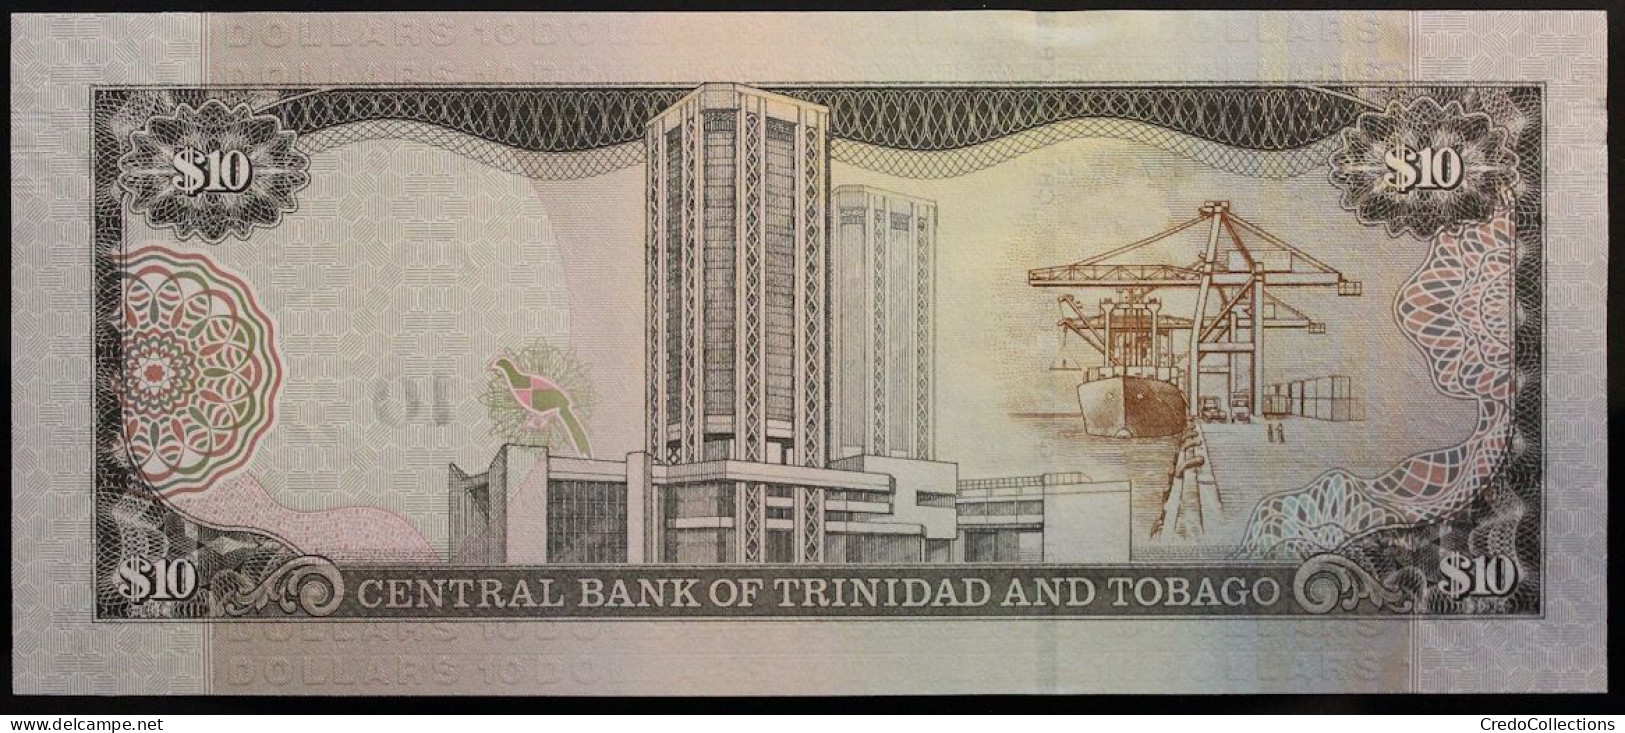 Trinitad Et Tobago - 10 Dollars - 2016 - PICK 57b - NEUF - Trinidad Y Tobago